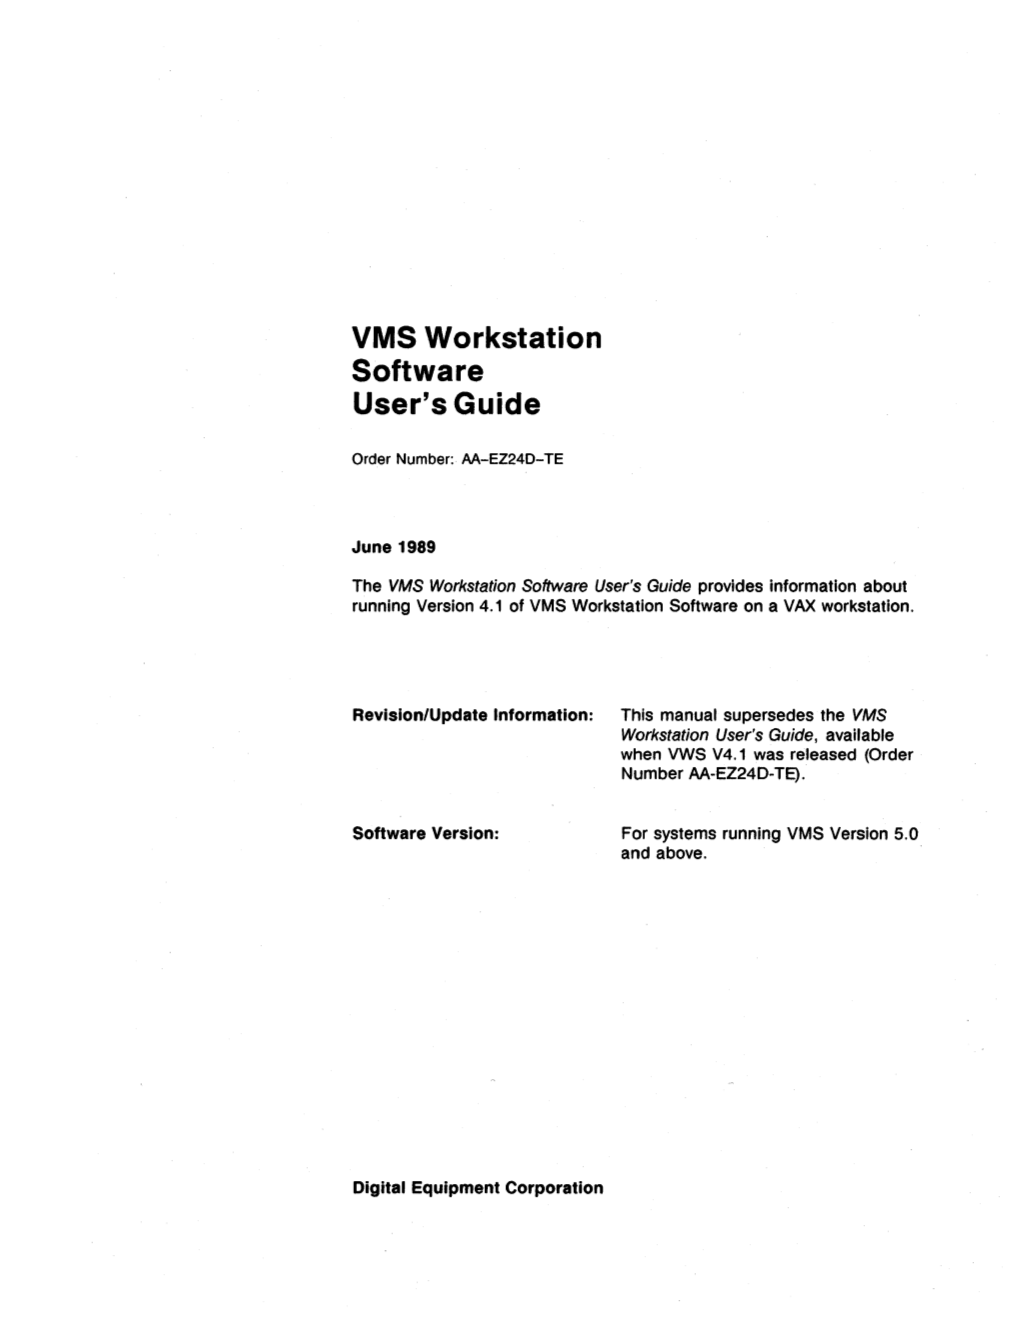 VMS Workstation Software User's Guide